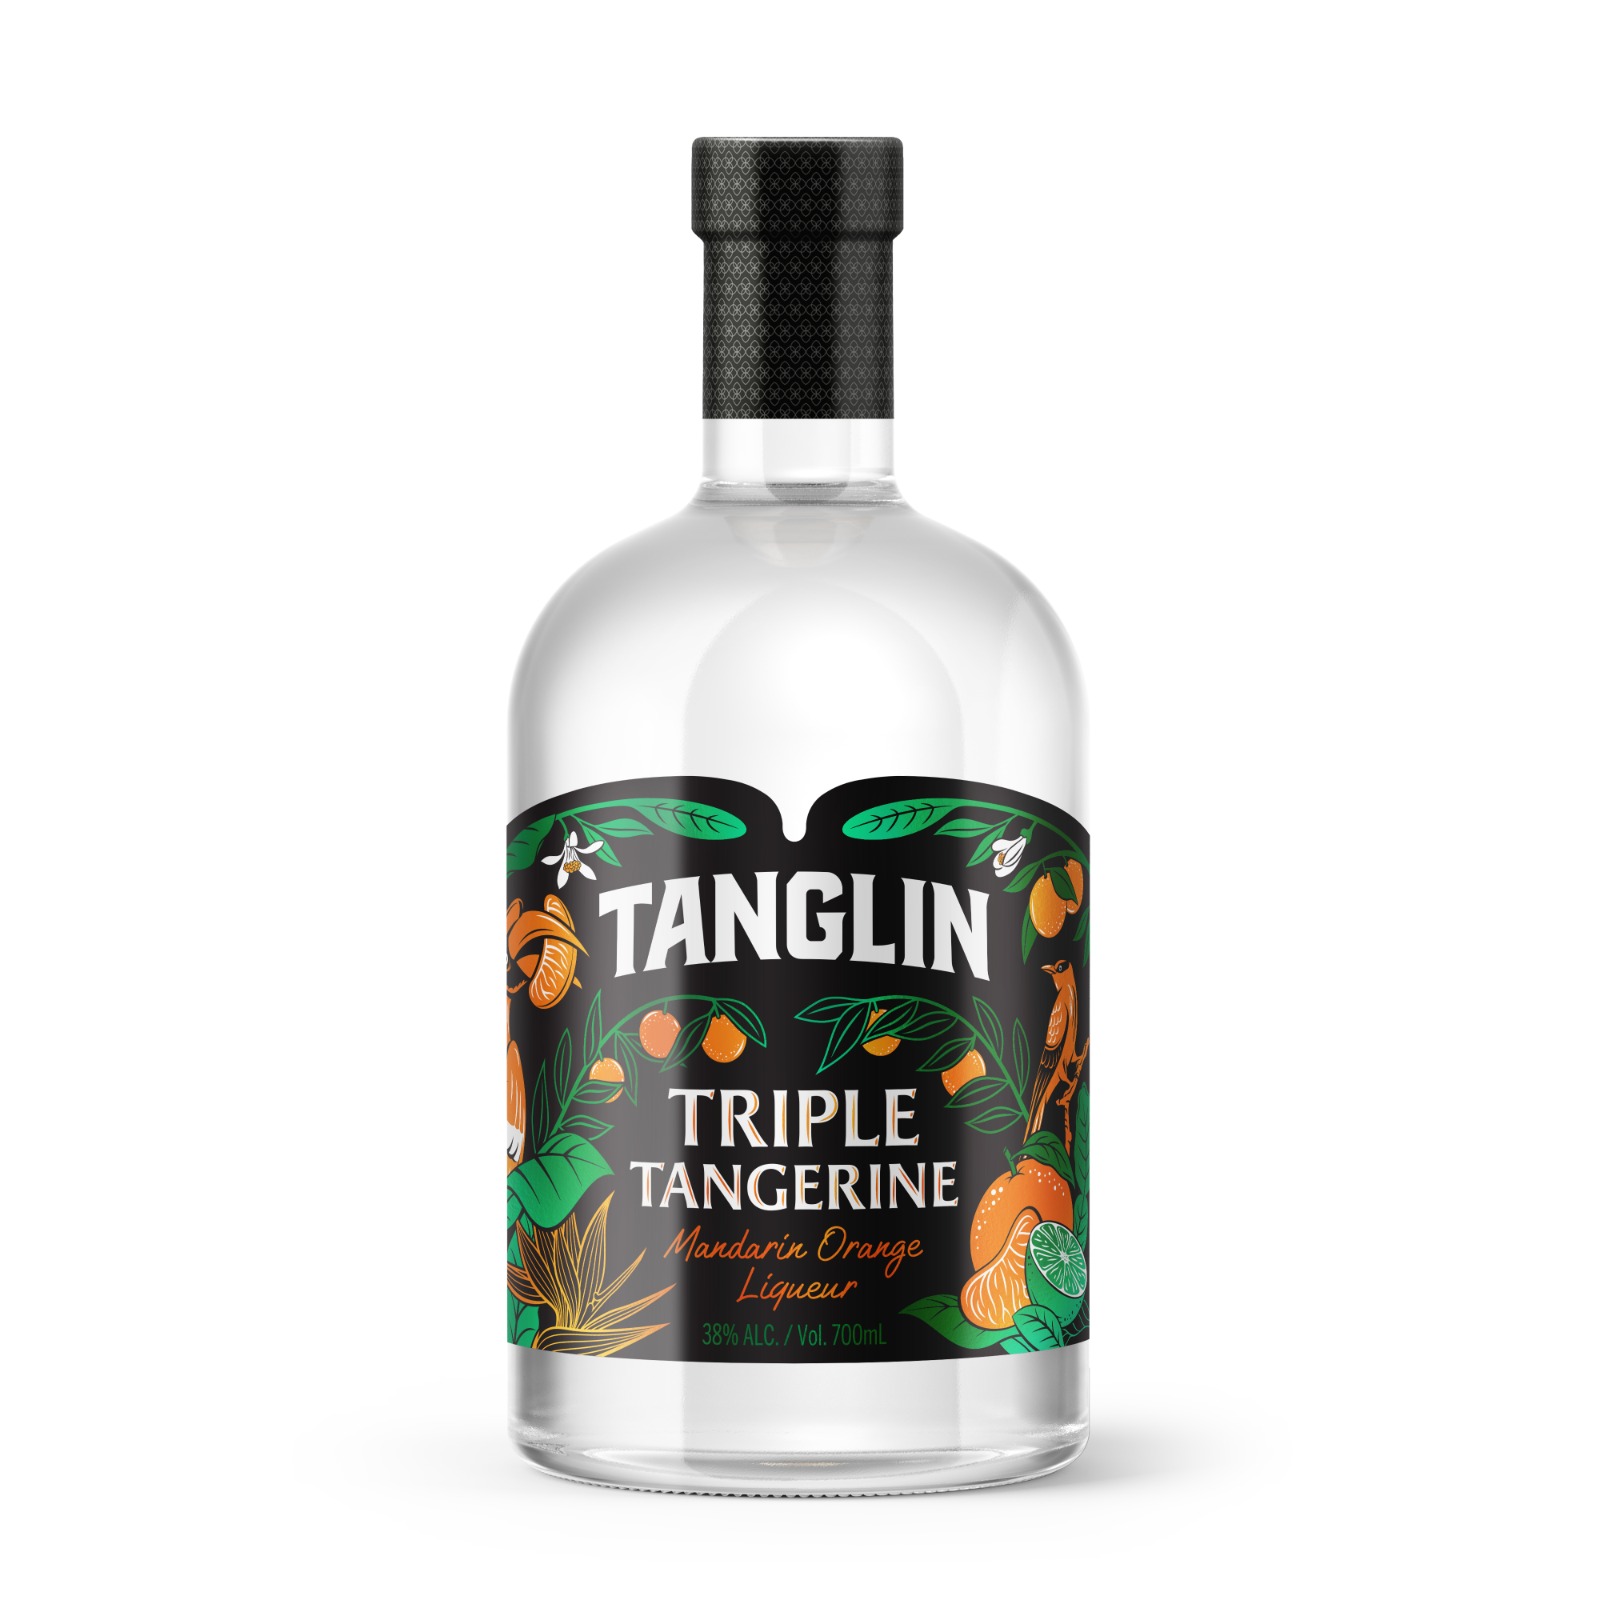 Triple Tangerine Mandarin Orange Liqueur